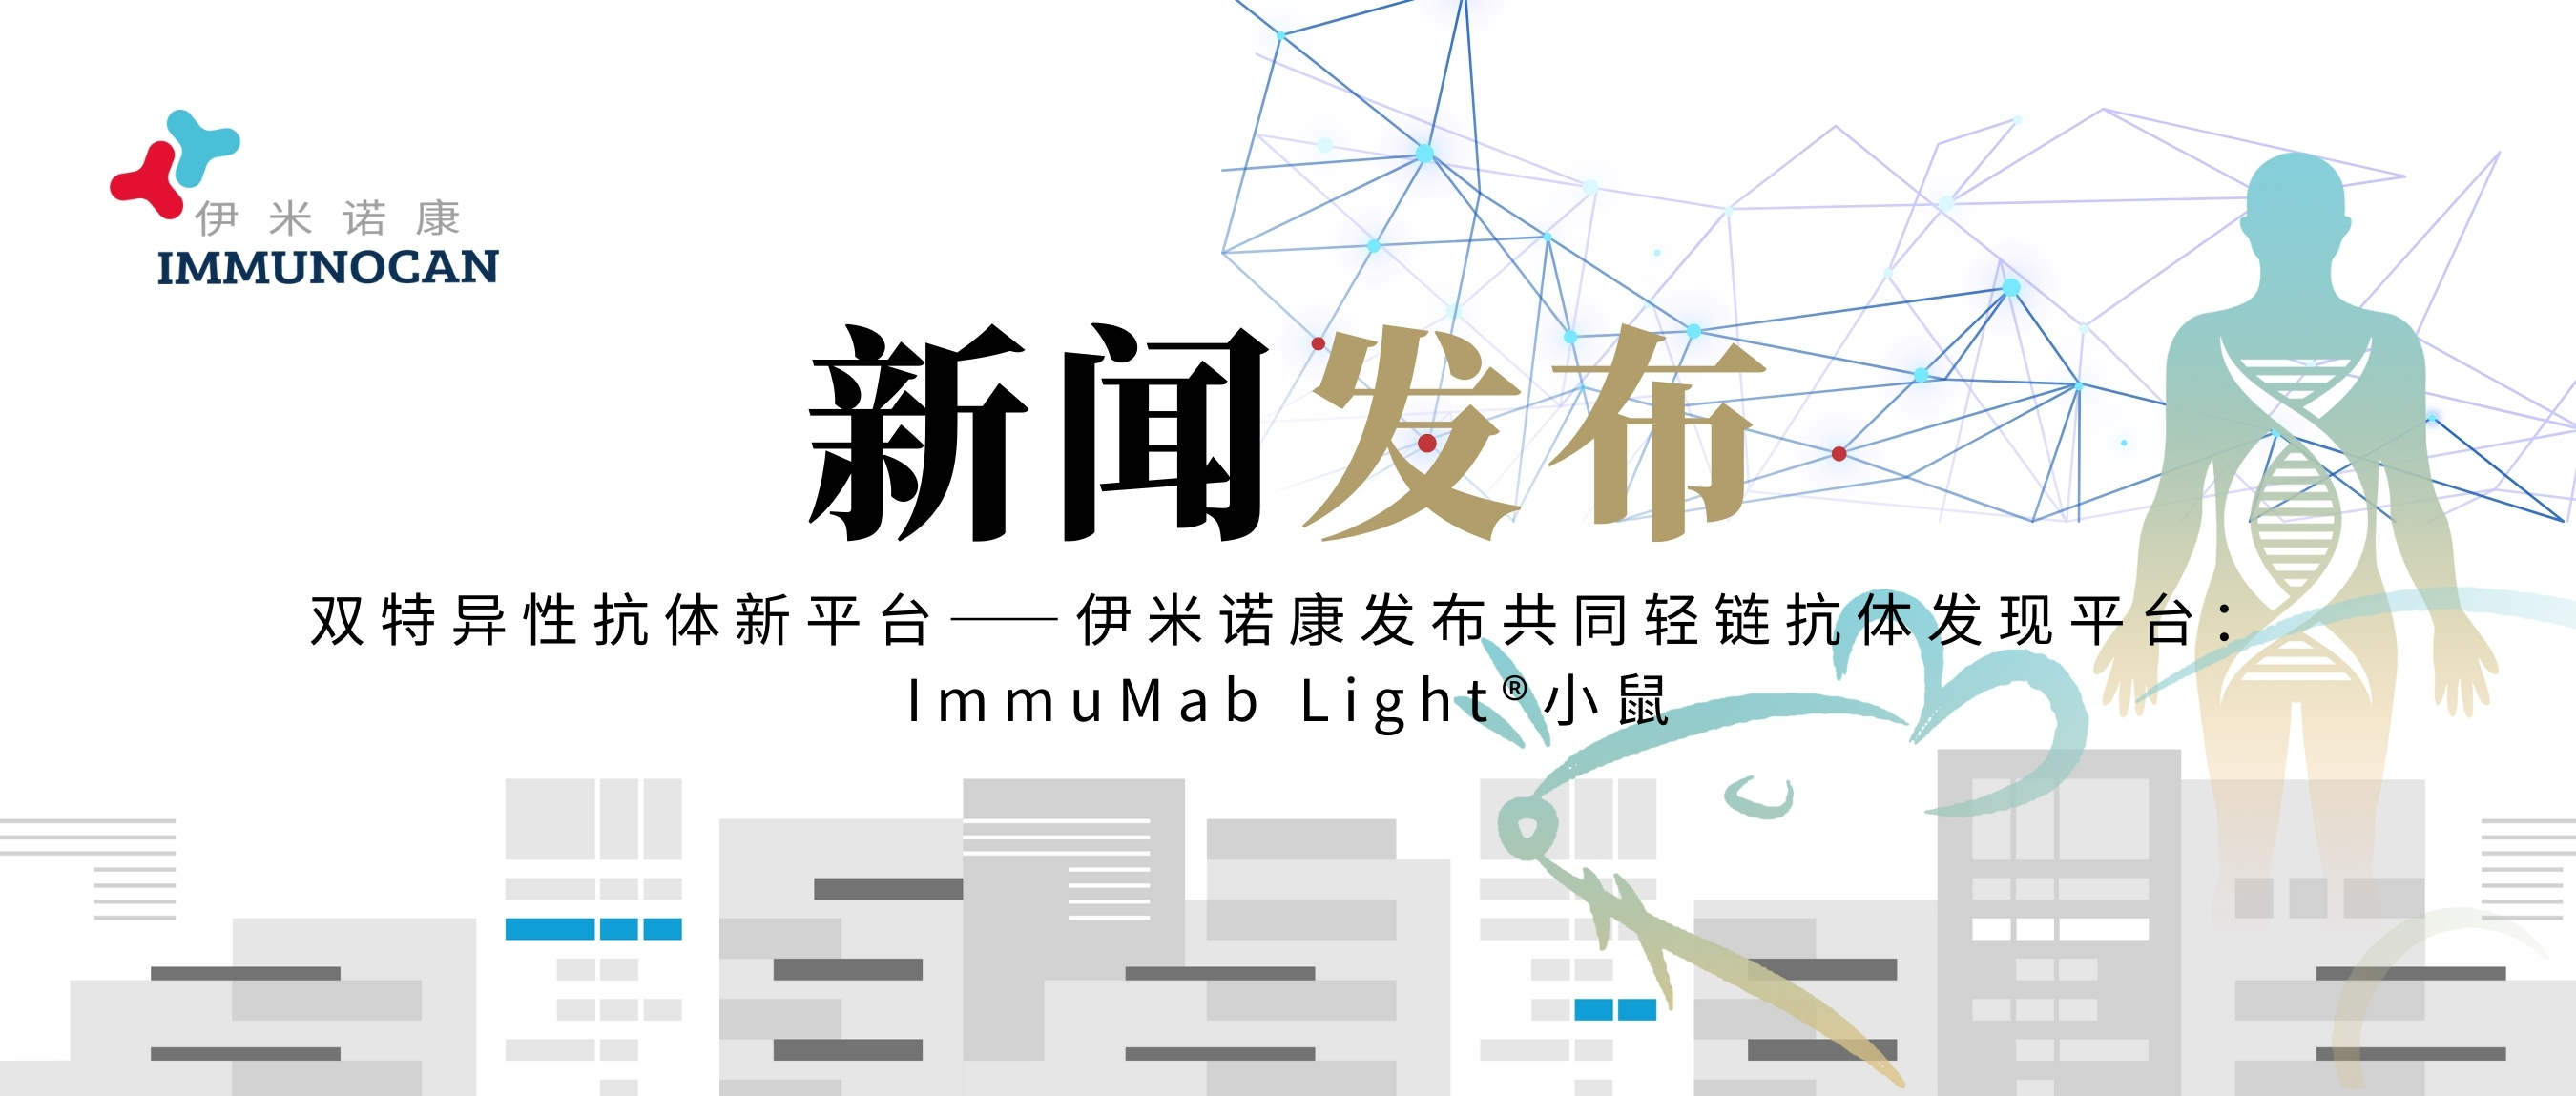 双特异性抗体新平台—伊米诺康发布共同轻链抗体发现平台：ImmuMab Light®小鼠